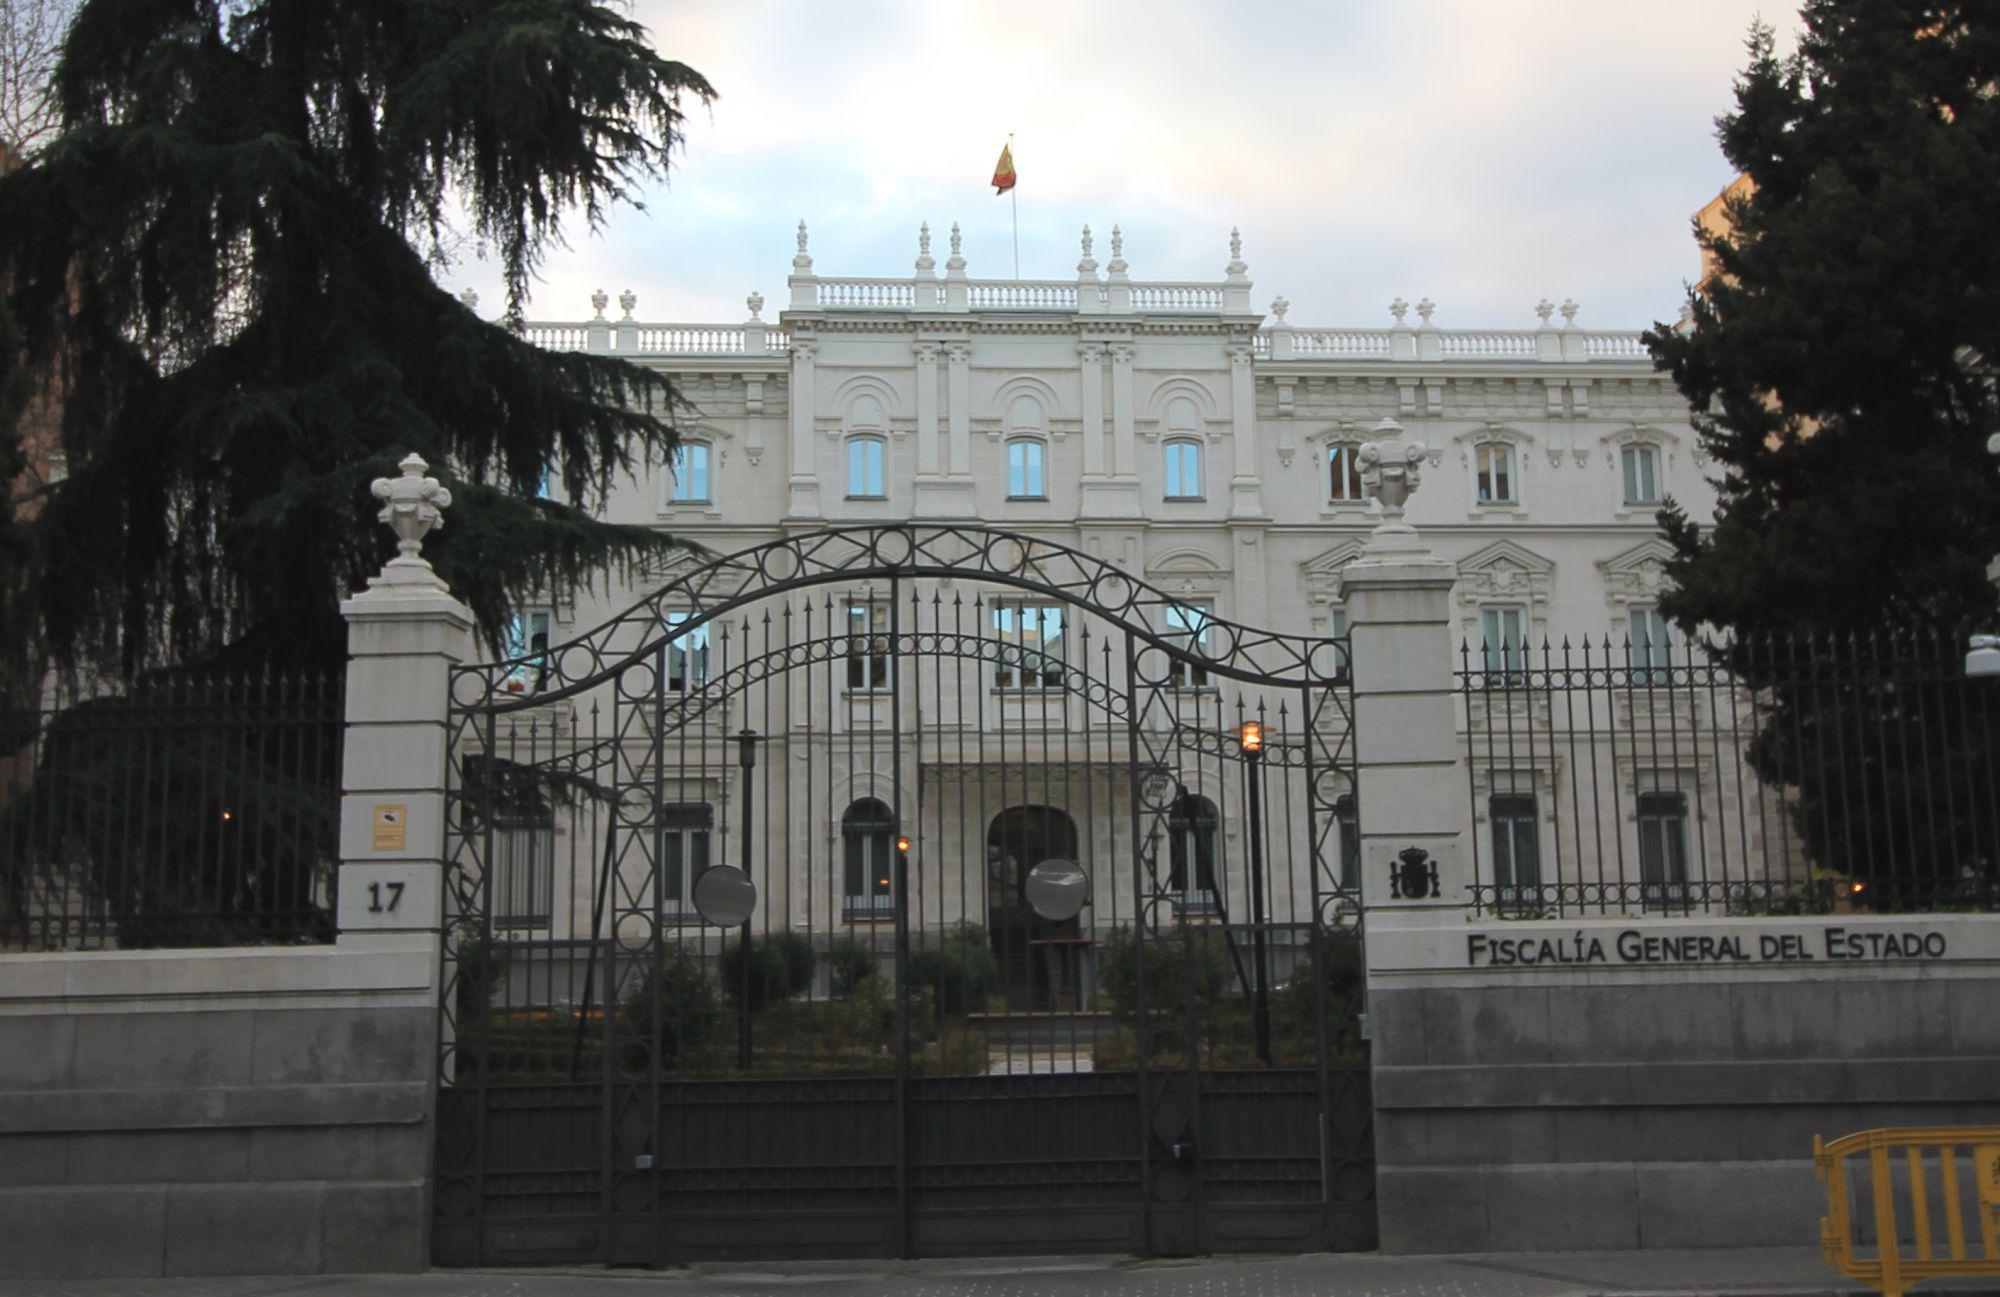 La Fiscalía General de España colabora en la investigación / Foto: Wikipedia